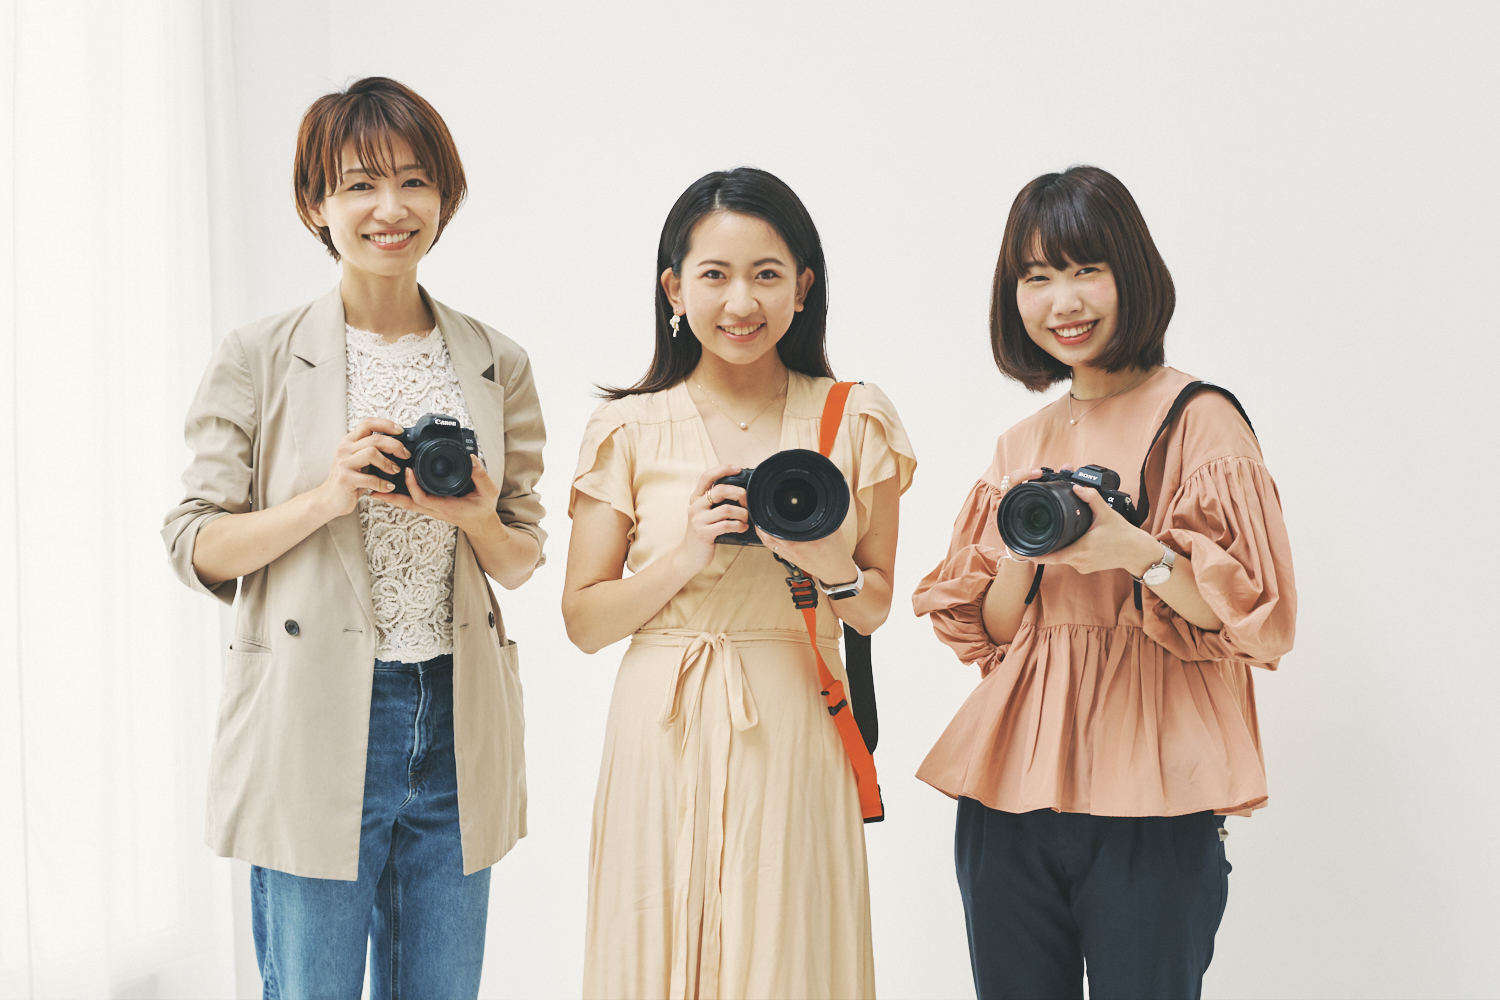 ハナコラボ パートナーも参加！永田尚子さん（左）と徳成祐衣さん（中央）は〈キヤノン〉、竹内真奈さん（右）は〈ソニー〉のカメラを愛用。永田さんと竹内さんは仕事用としても使用するそう。